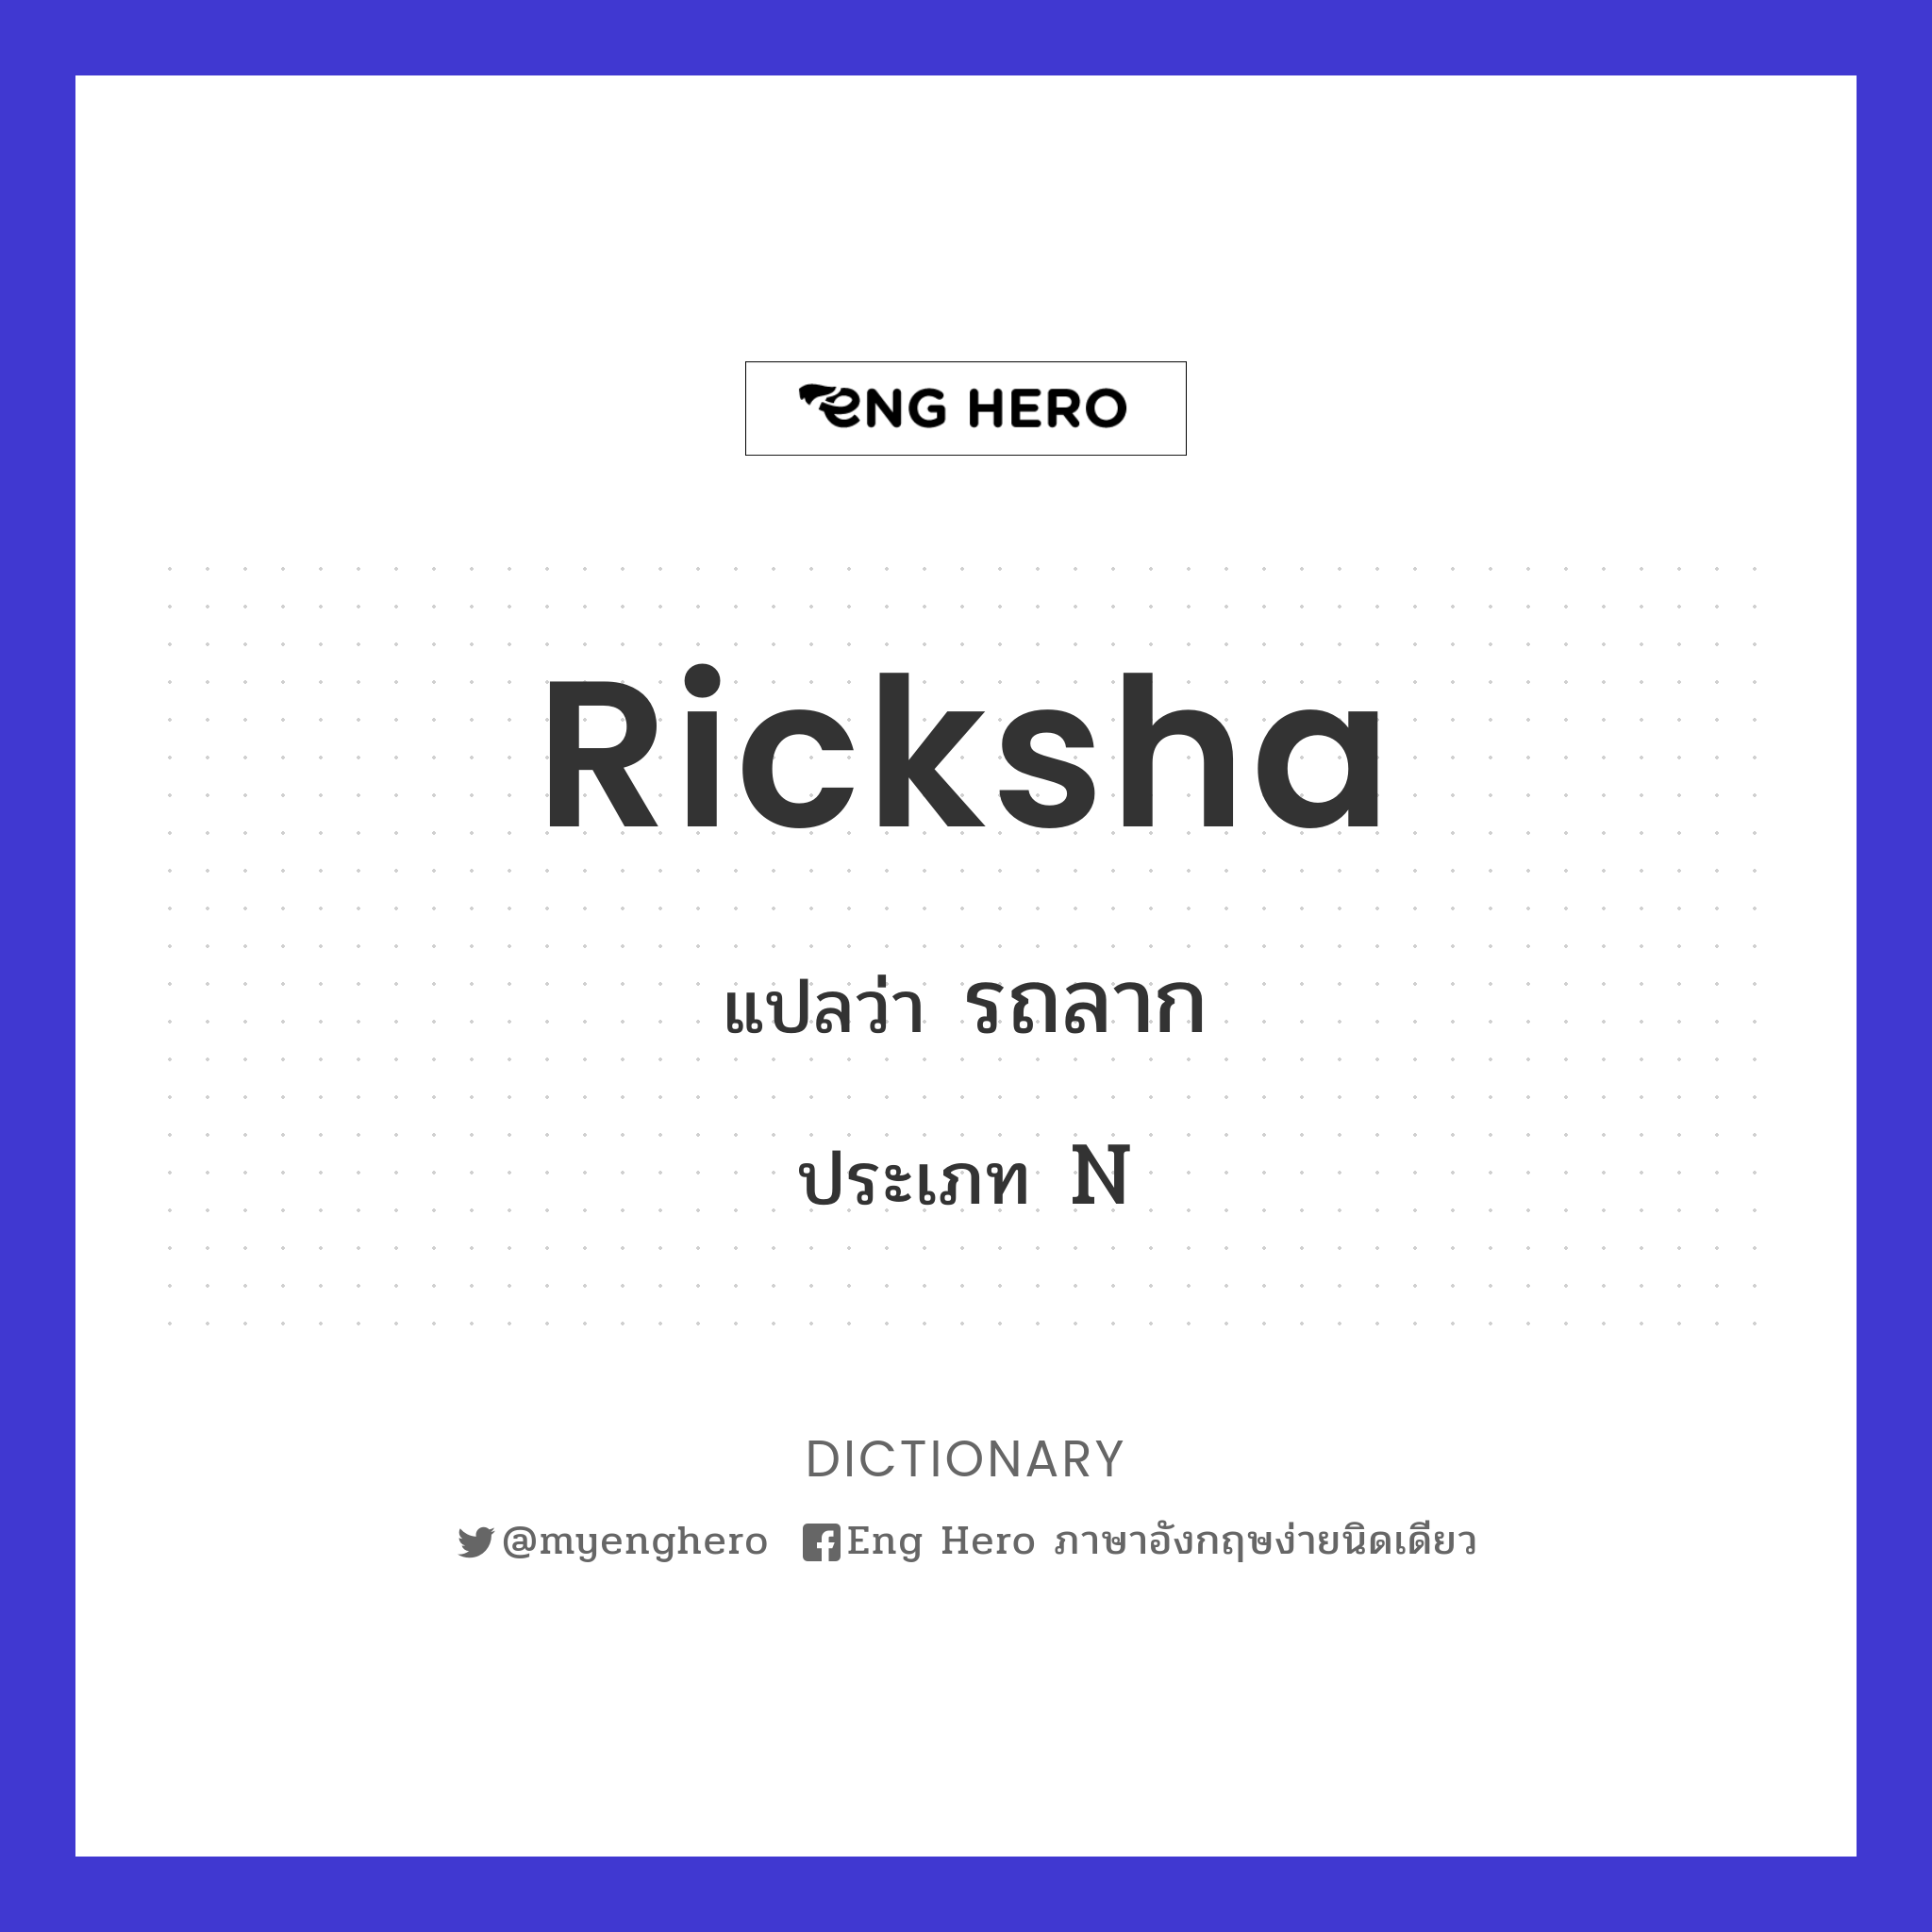 ricksha